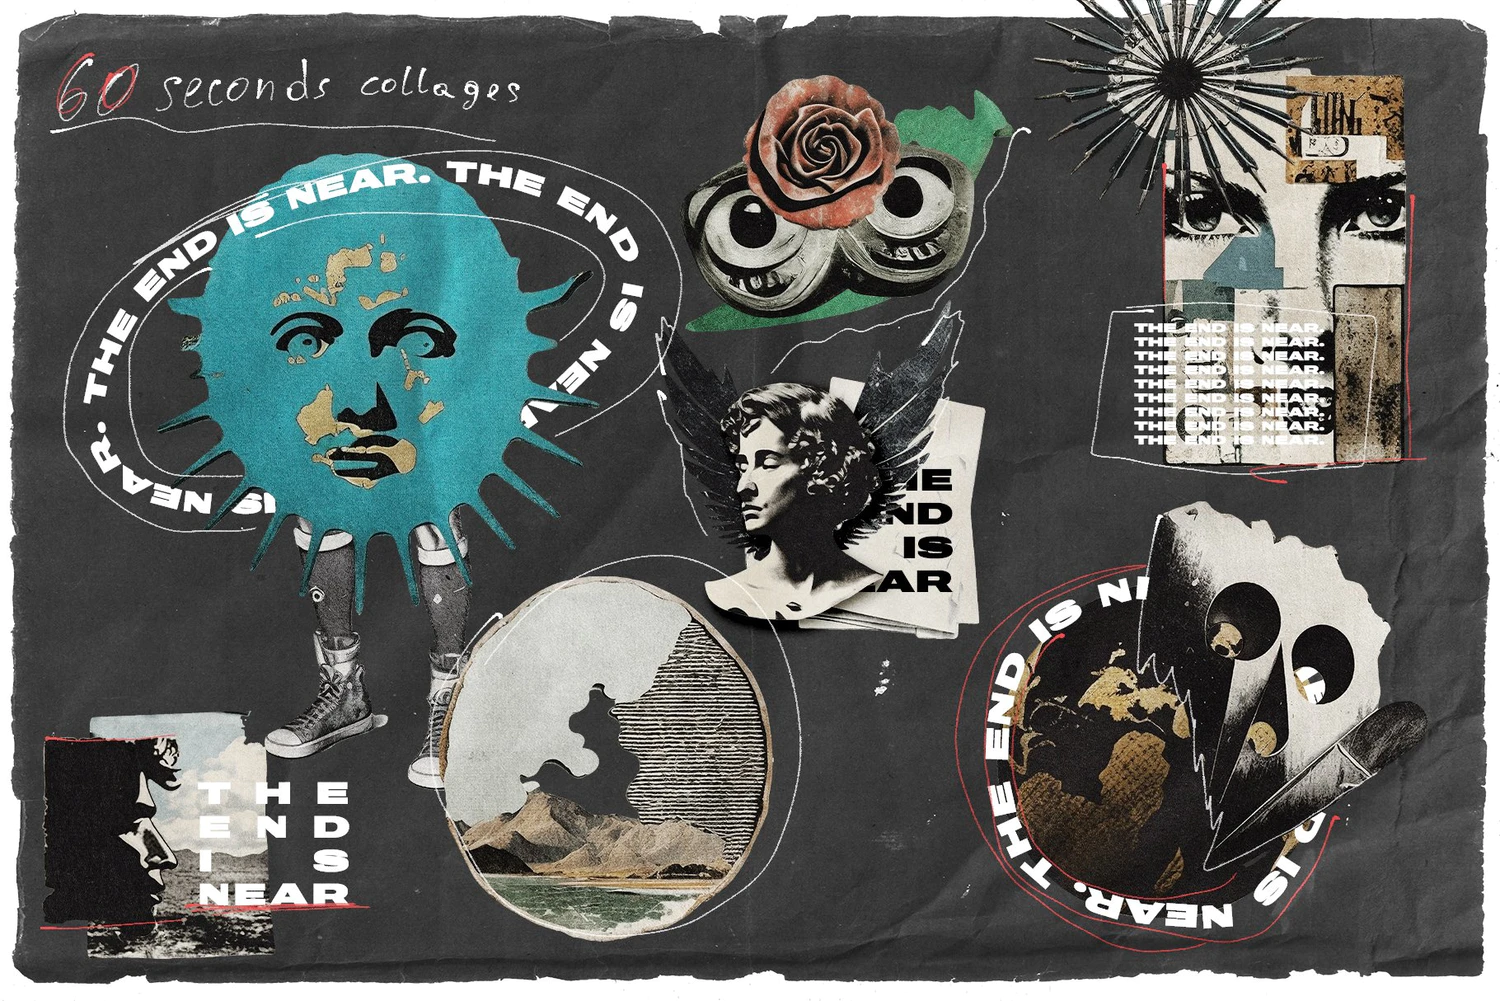 5508 复古街头前卫艺术叛逆精神的拼贴画素材集合包-Collage Cutouts Vol. 2